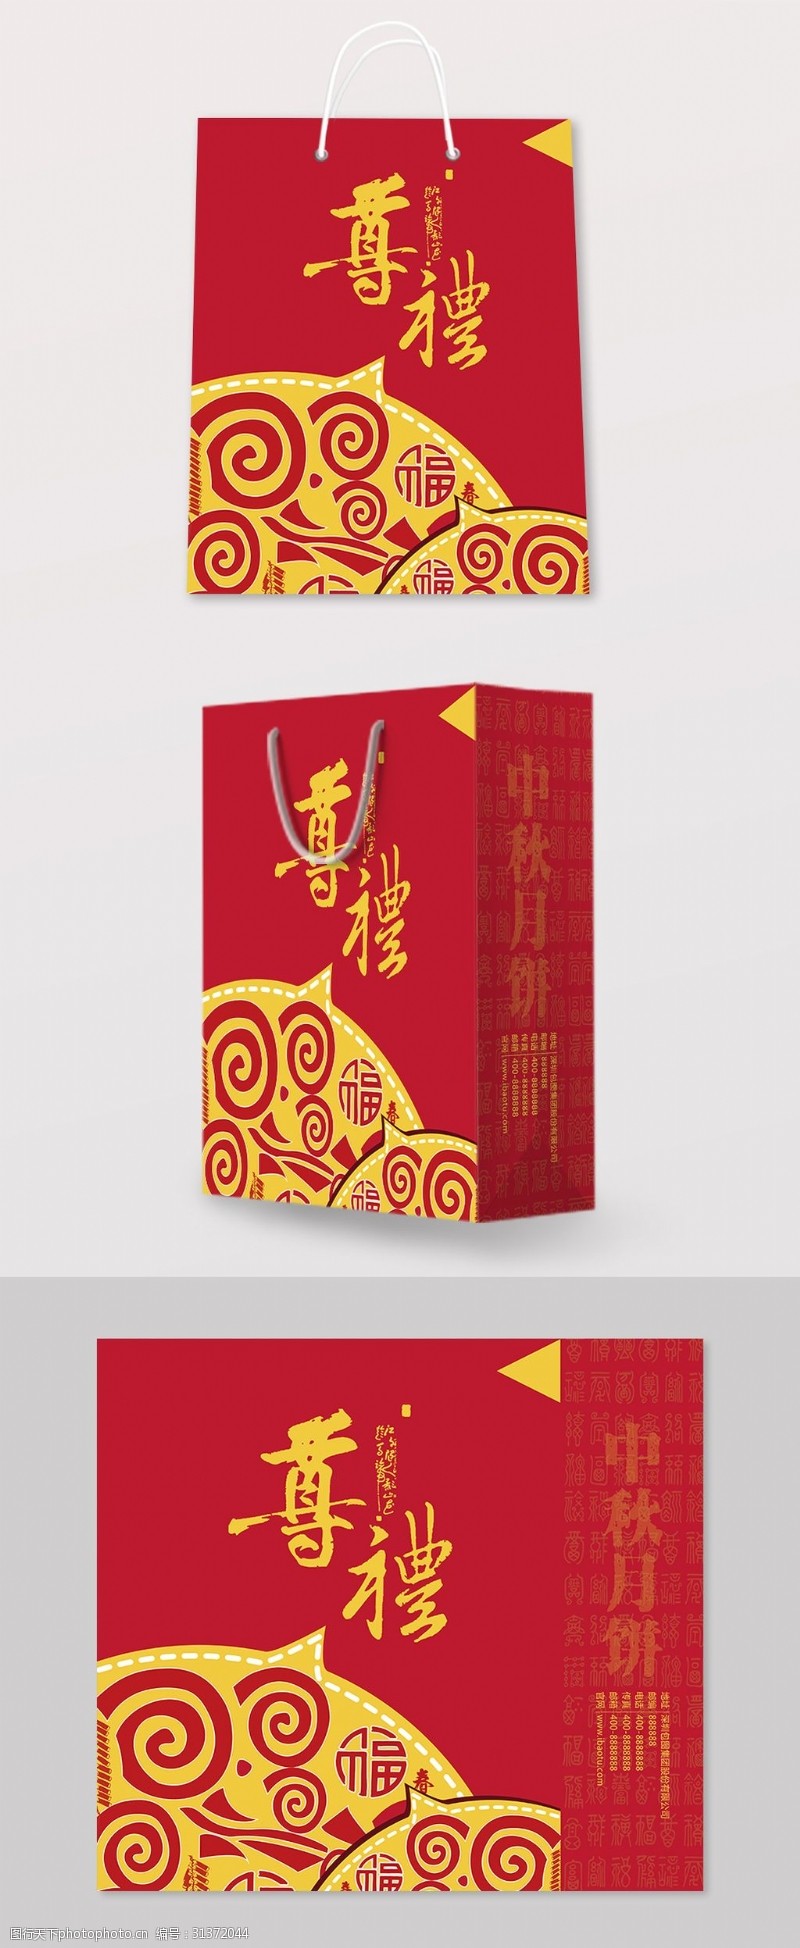 飞机盒喜庆中国红节日礼品手提袋包装设计